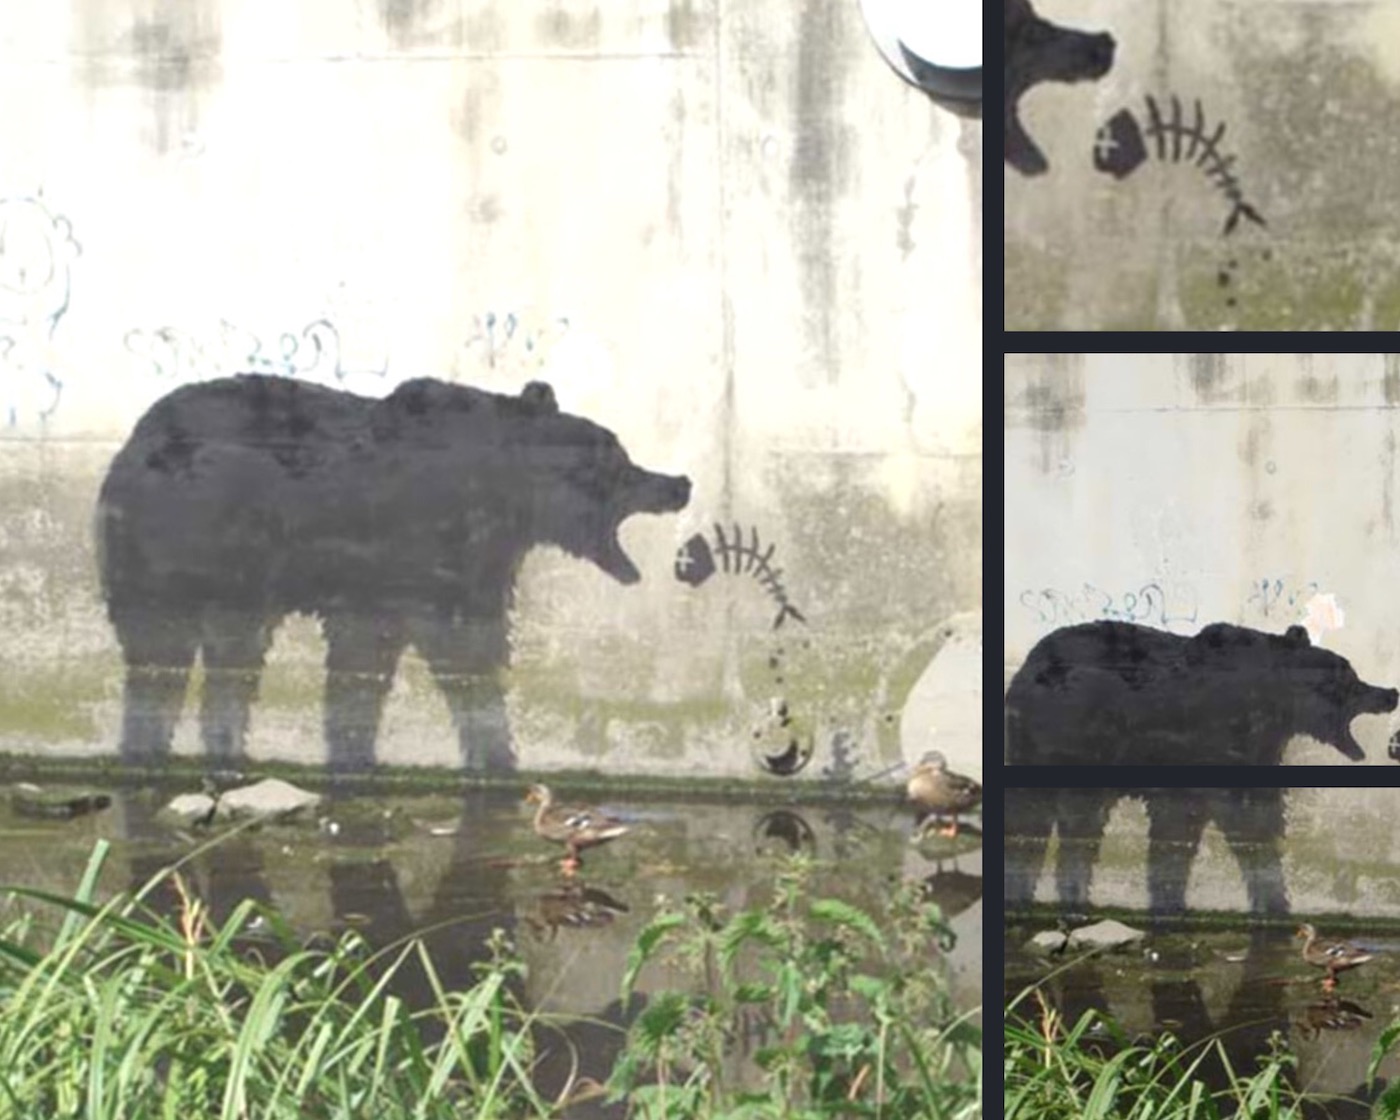 street art tema sustainability: inquinamento dei mari che distrugge l'ecosistema